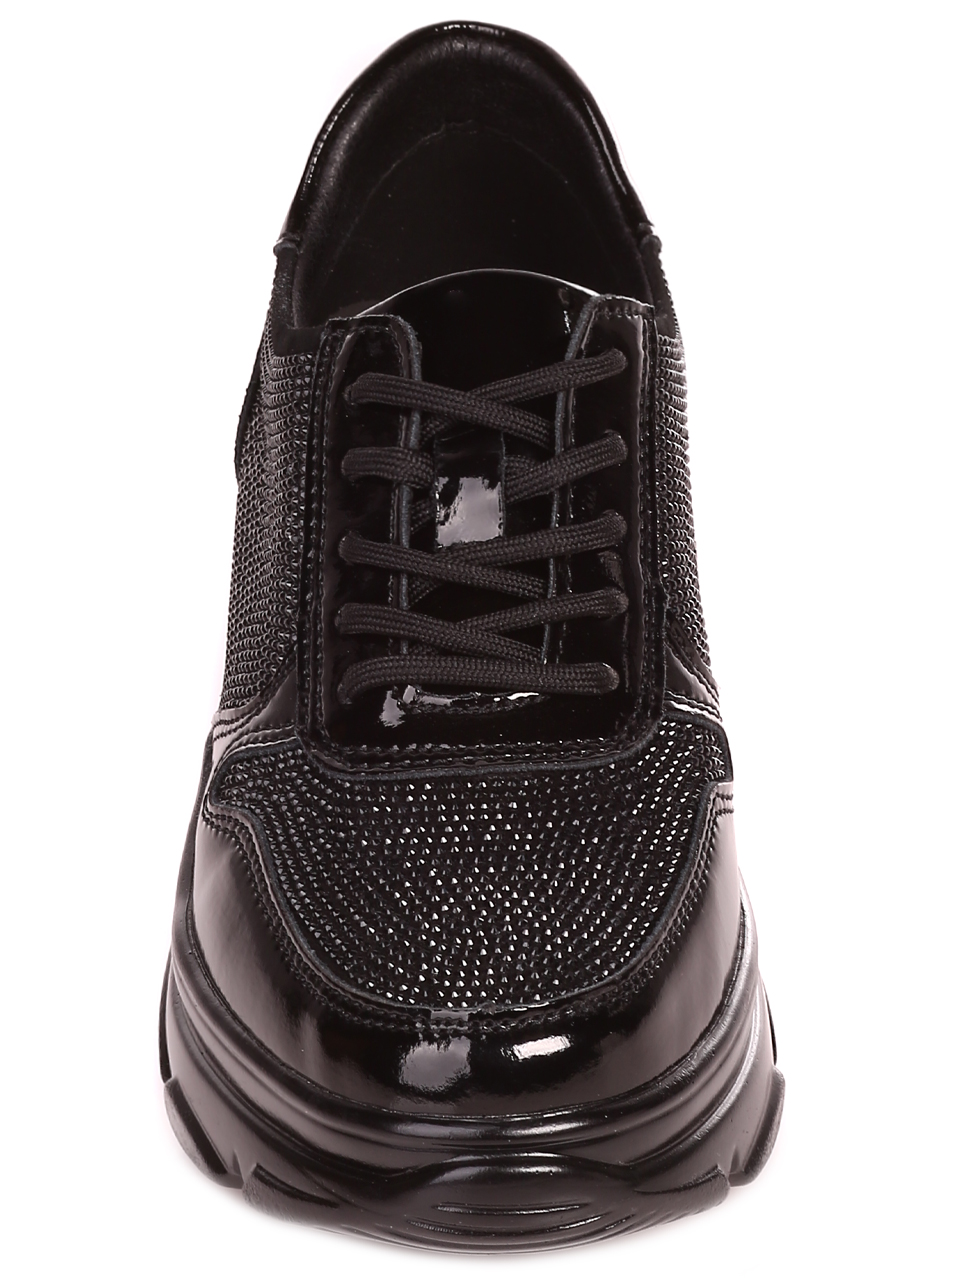 Ежедневни дамски обувки от естествен велур и лак 3AF-23178 black